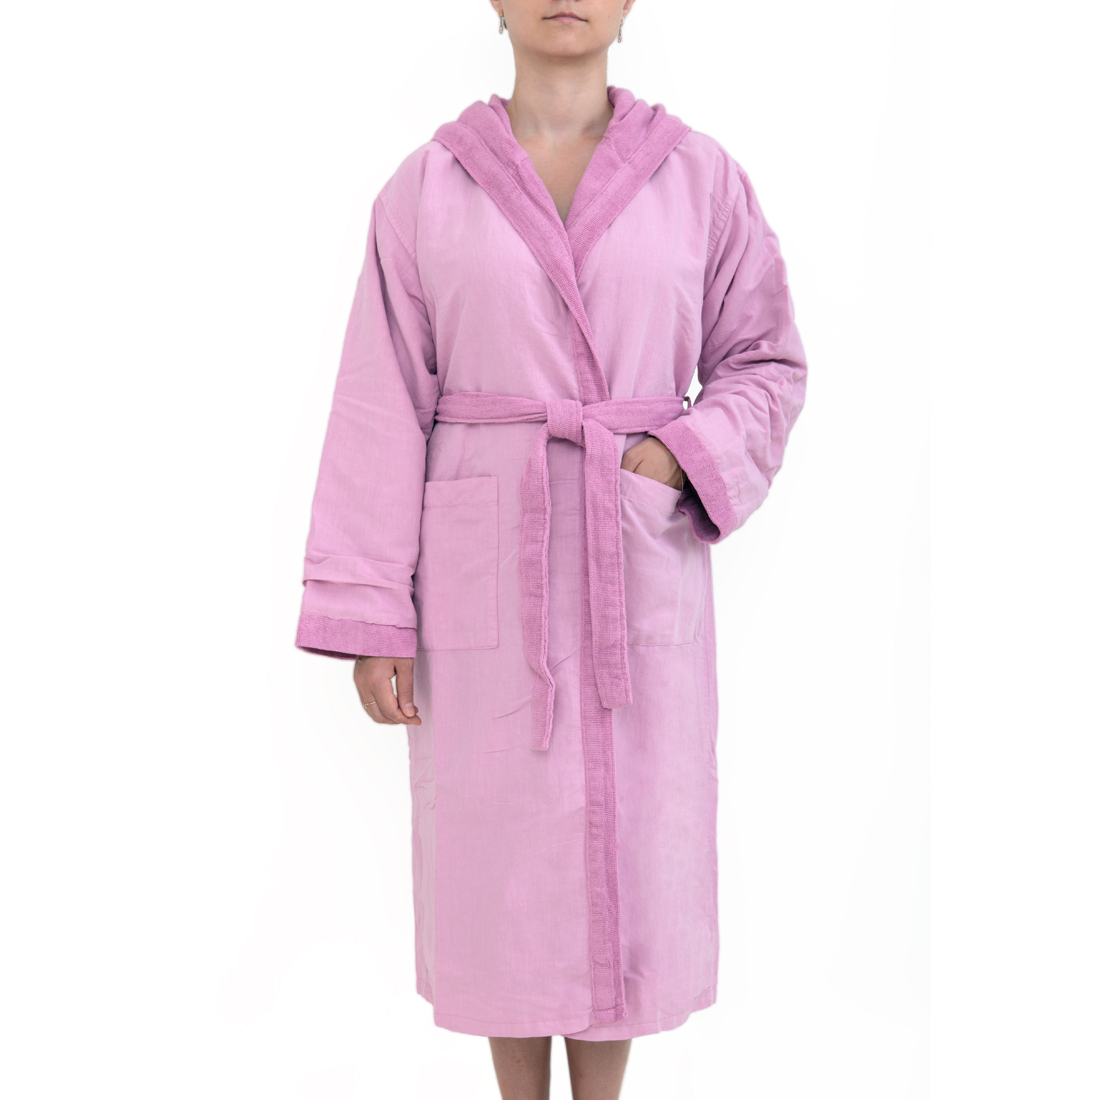 Банный халат Senses цвет: фиалковый (XL)